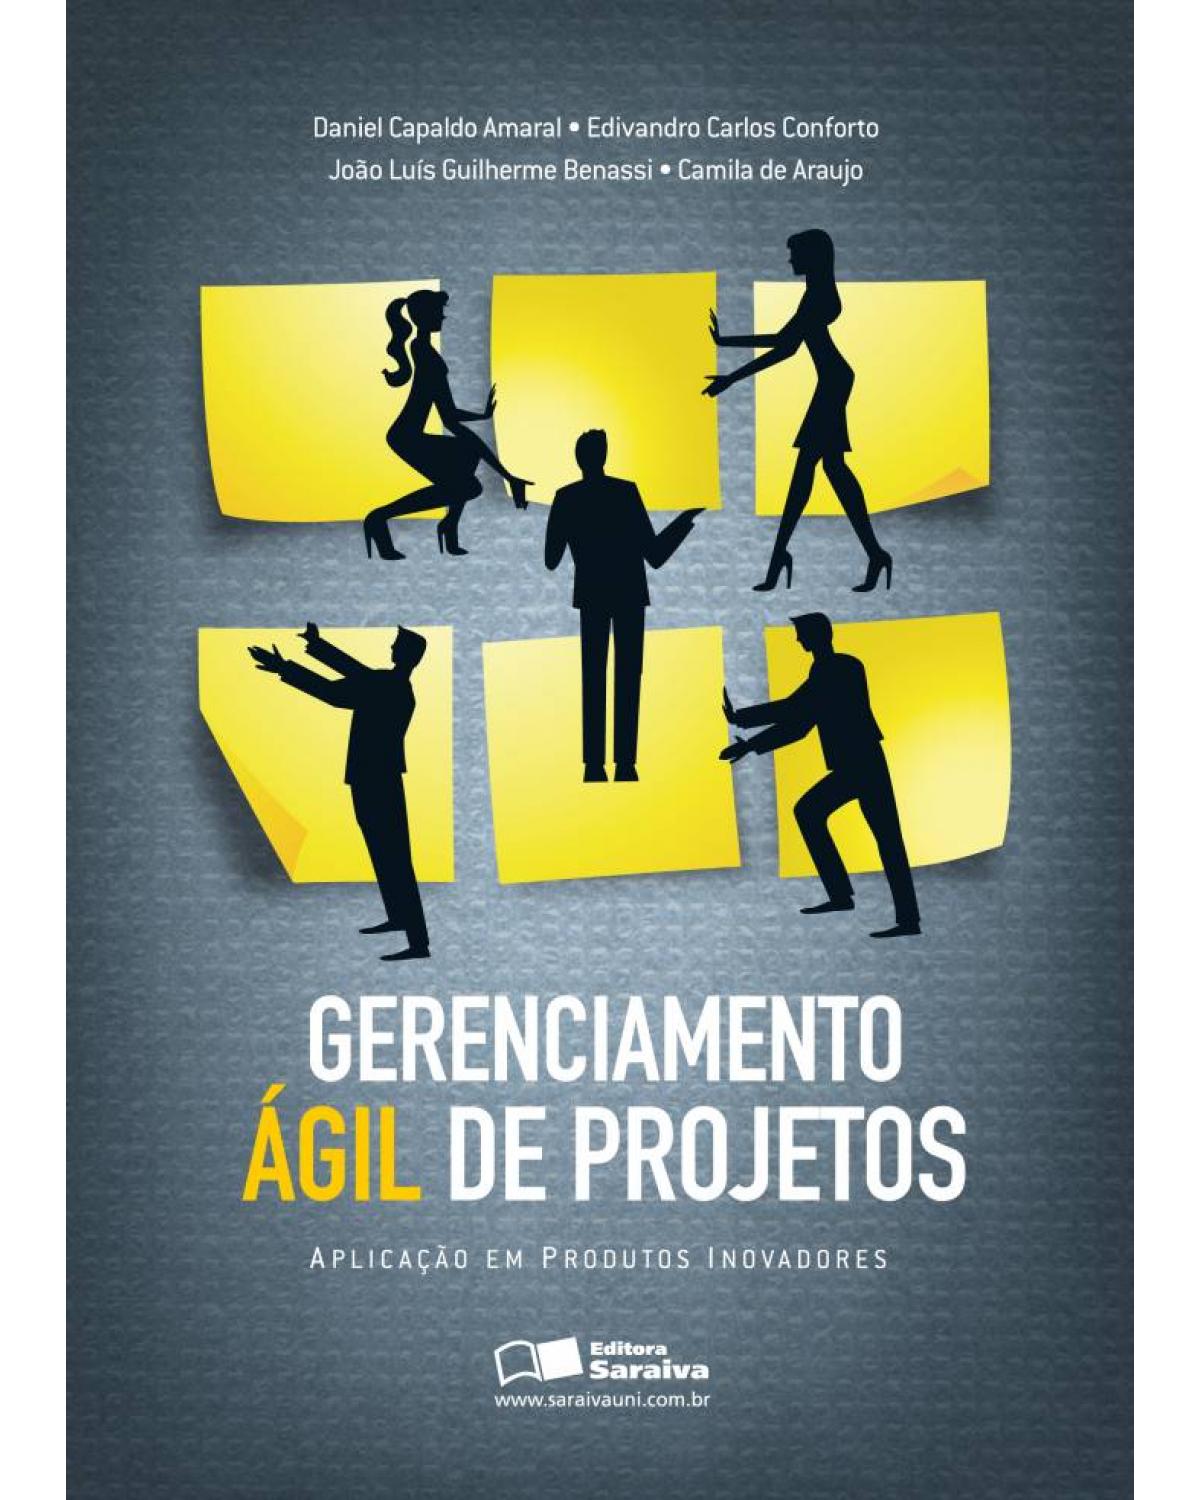 Gerenciamento ágil de projetos - aplicação em produtos inovadores - 1ª Edição | 2011